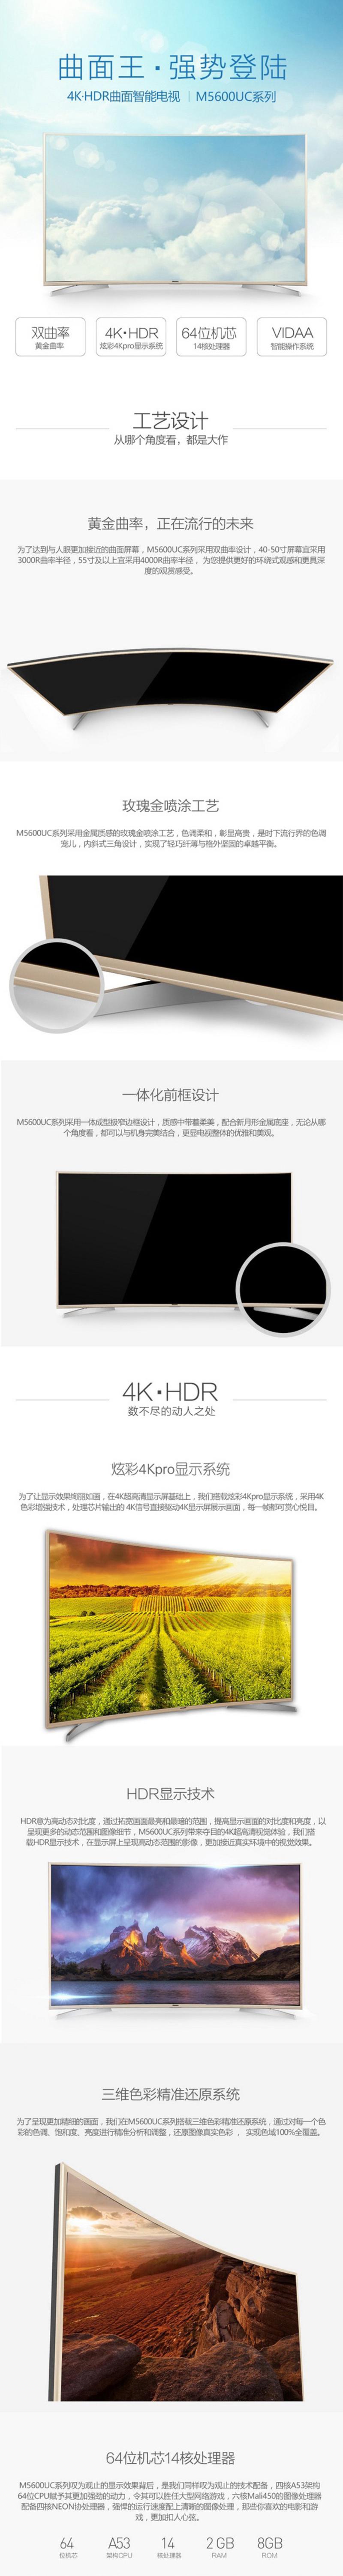 【邮乐新乡馆】海信彩电 LED43M5600UC 43英寸 4k超高清 曲面 智能液晶电视